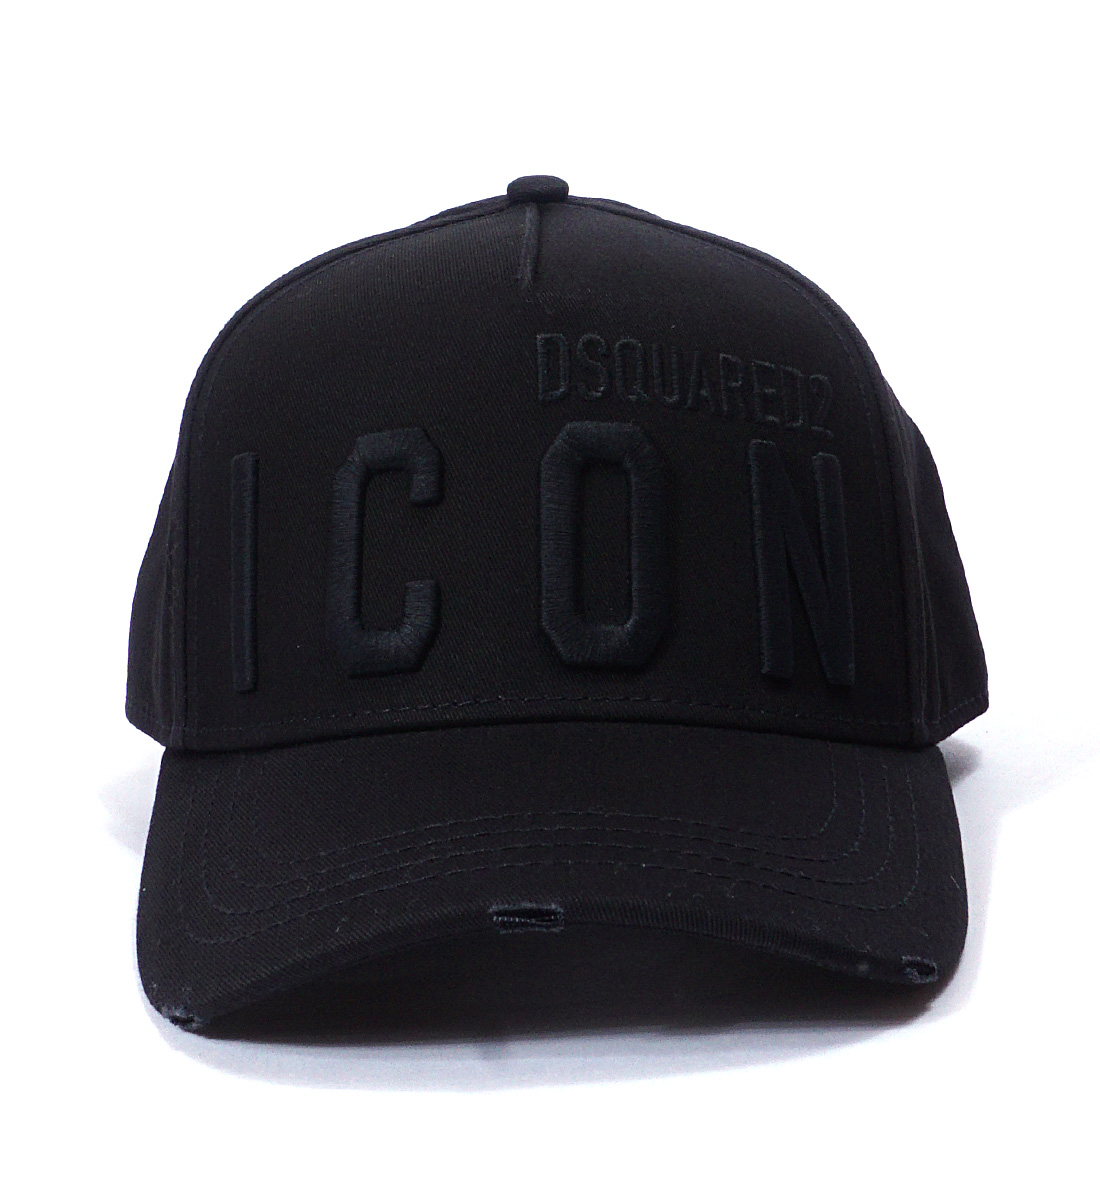 ディースクエアード キャップ メンズ DSQUARED2 ICON 帽子 ブランド BCM0412 05C00001